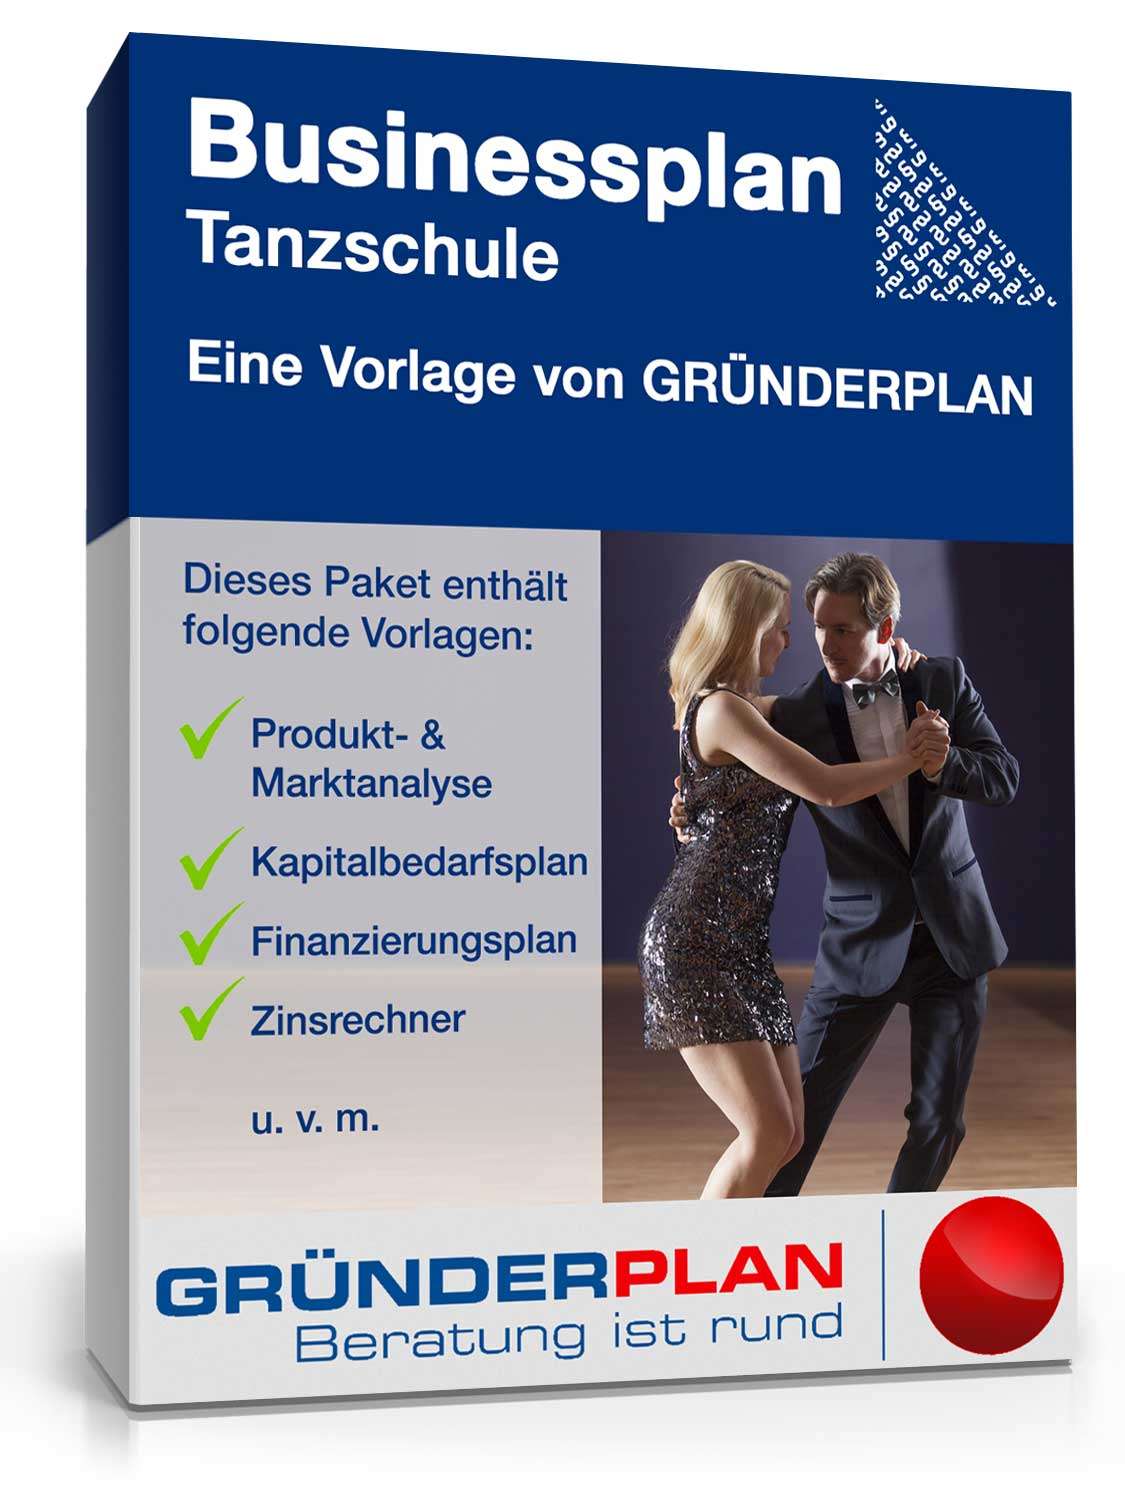 Hauptbild des Produkts: Businessplan Tanzschule von Gründerplan